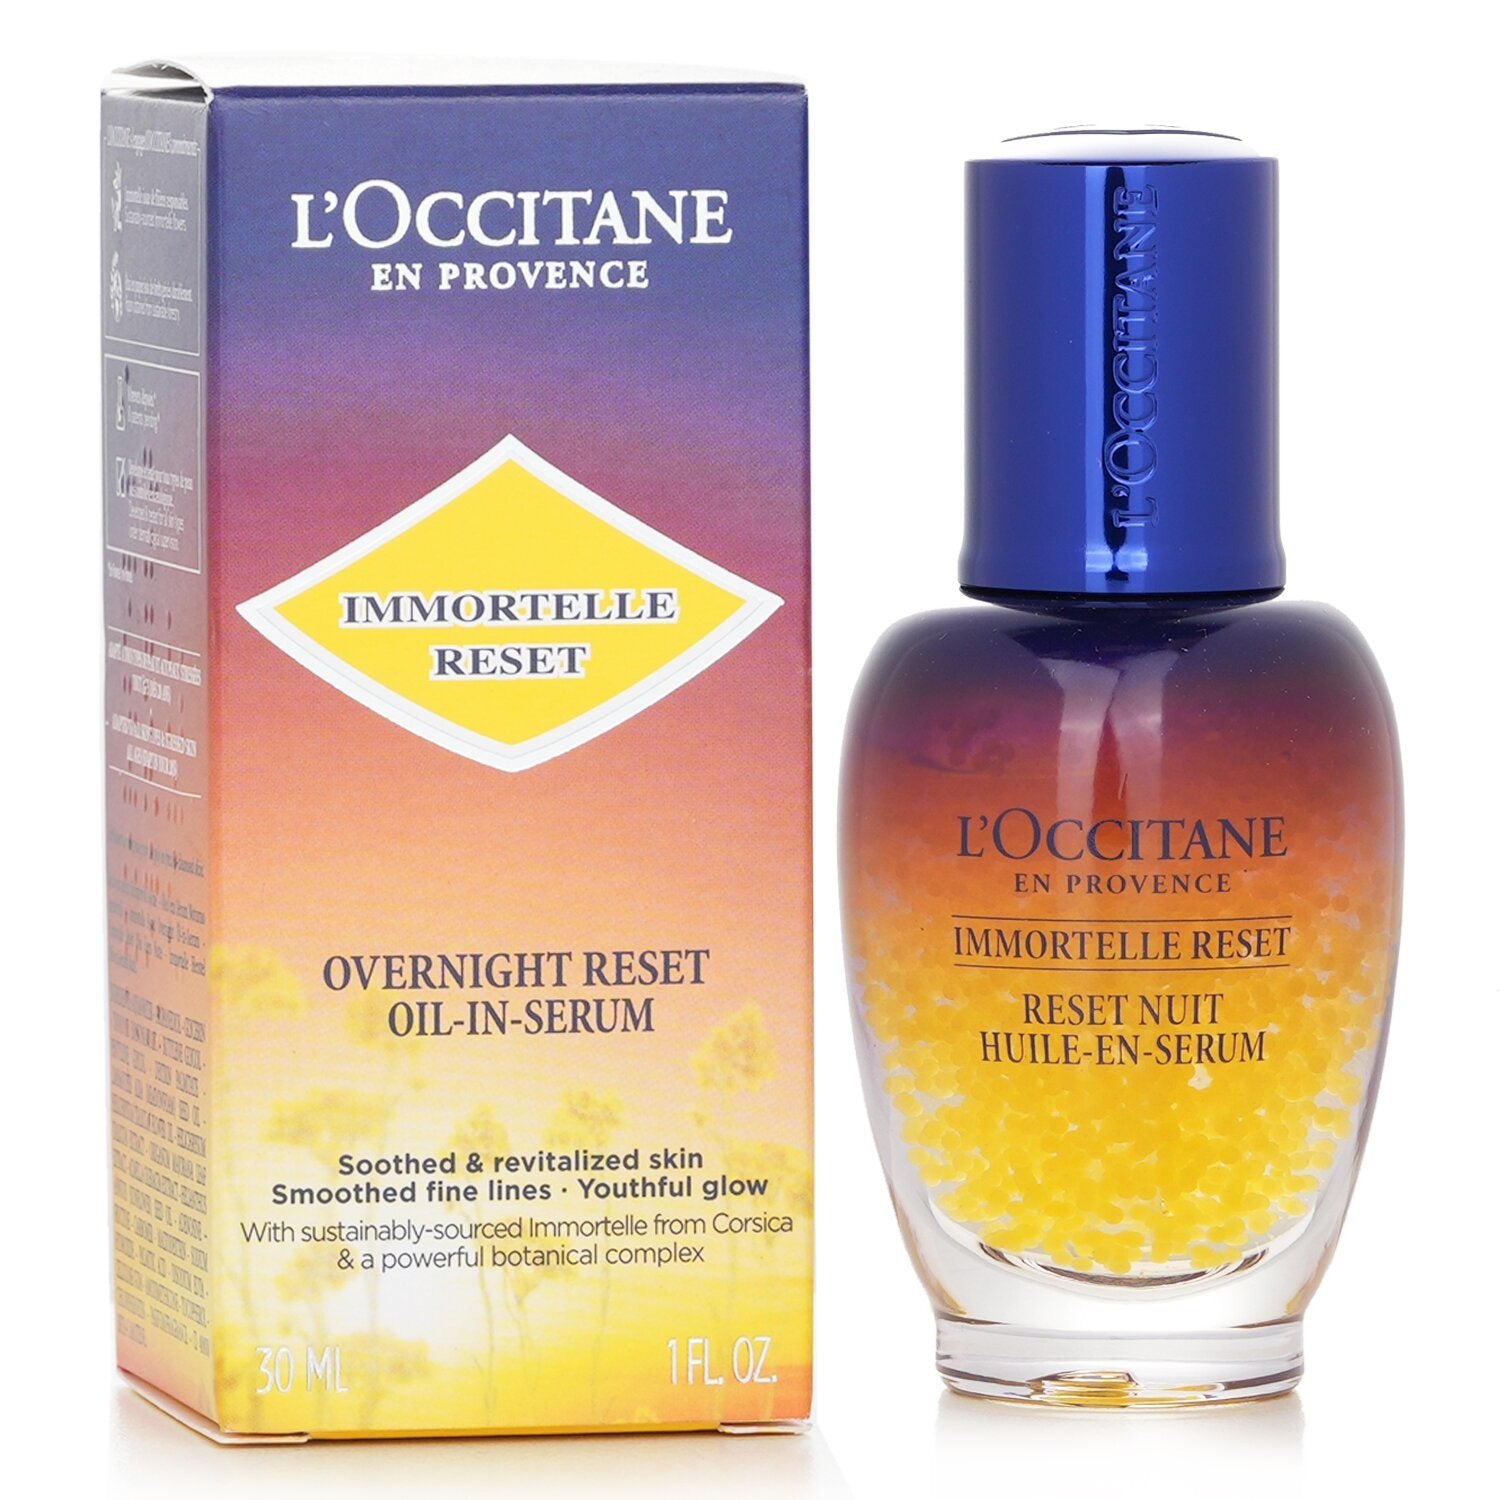 L'OCCITANE - Immortelle Overnight Reset Oil-In-Serum - 30ml/1oz 3P's Inclusive Beauty